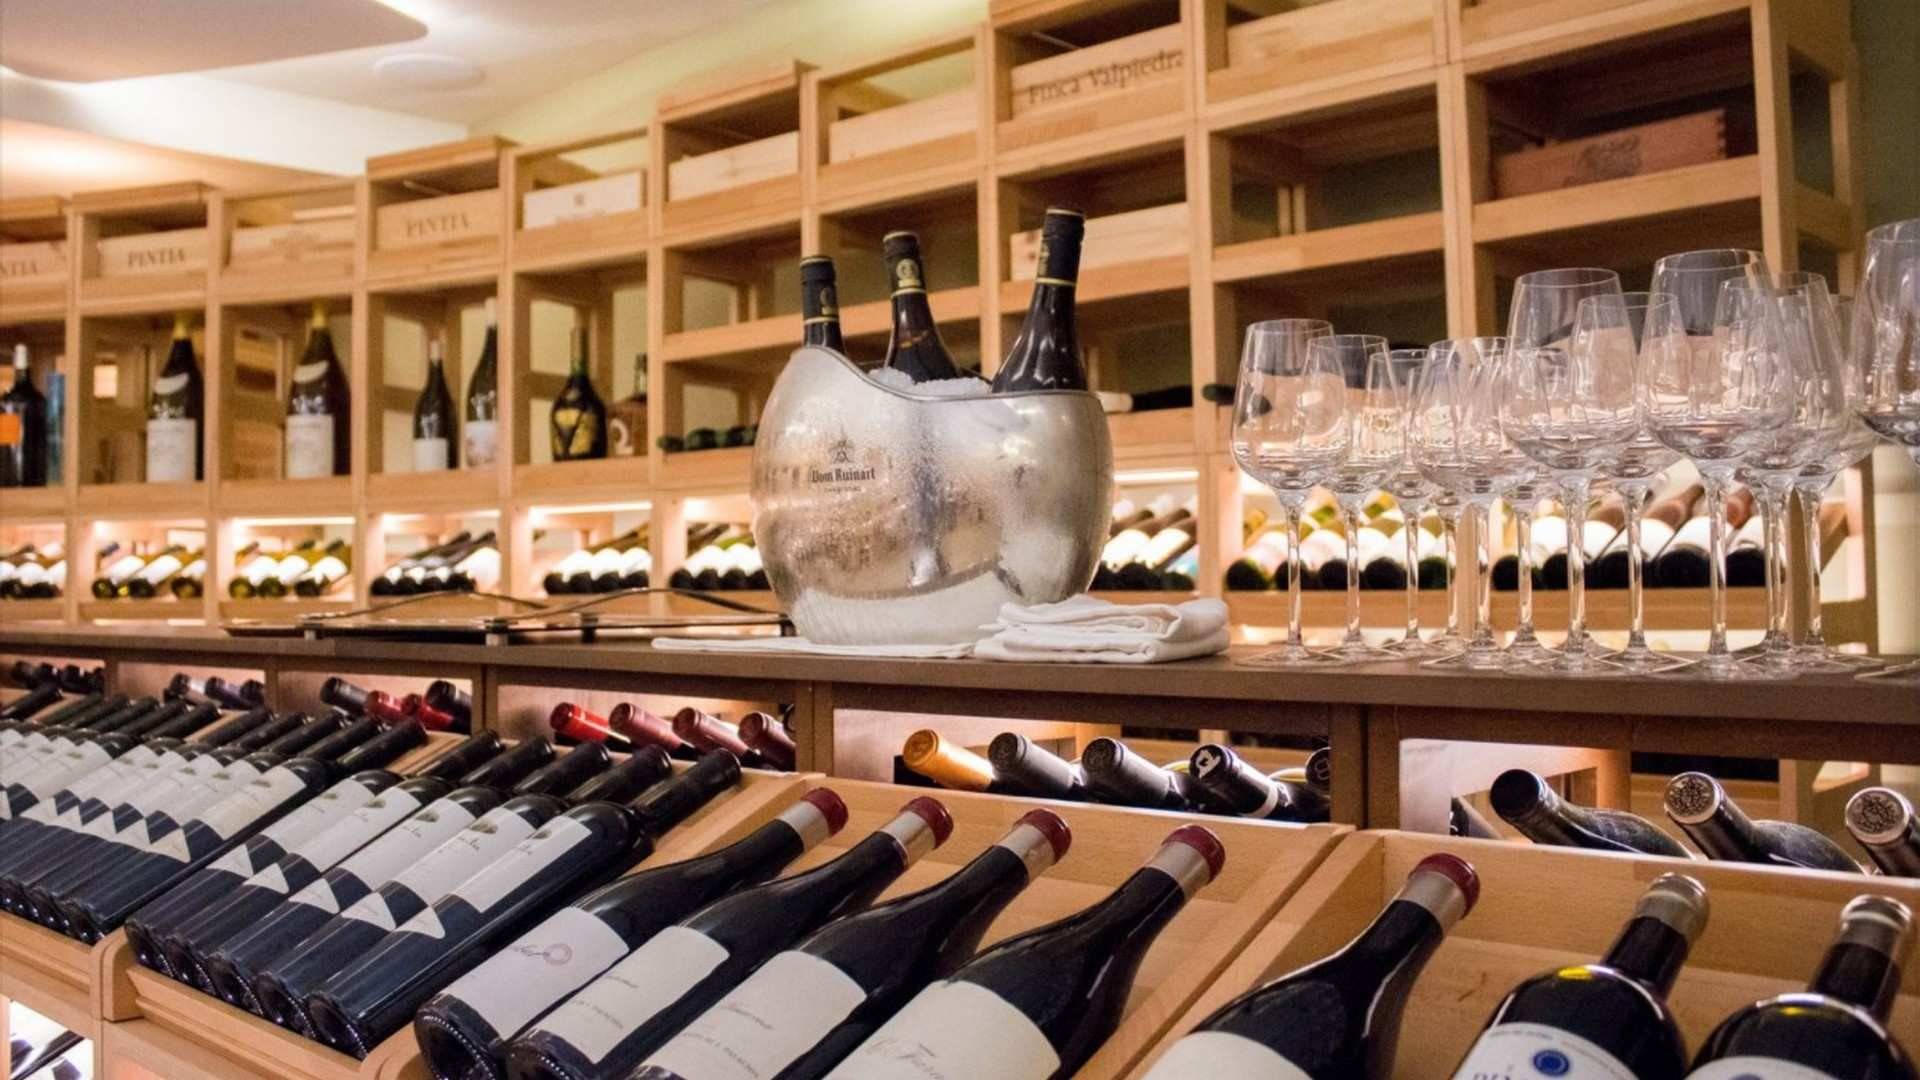 La bodega de Coque cuenta con más de 2000 referencias de vinos en un maravilloso espacio semicircular